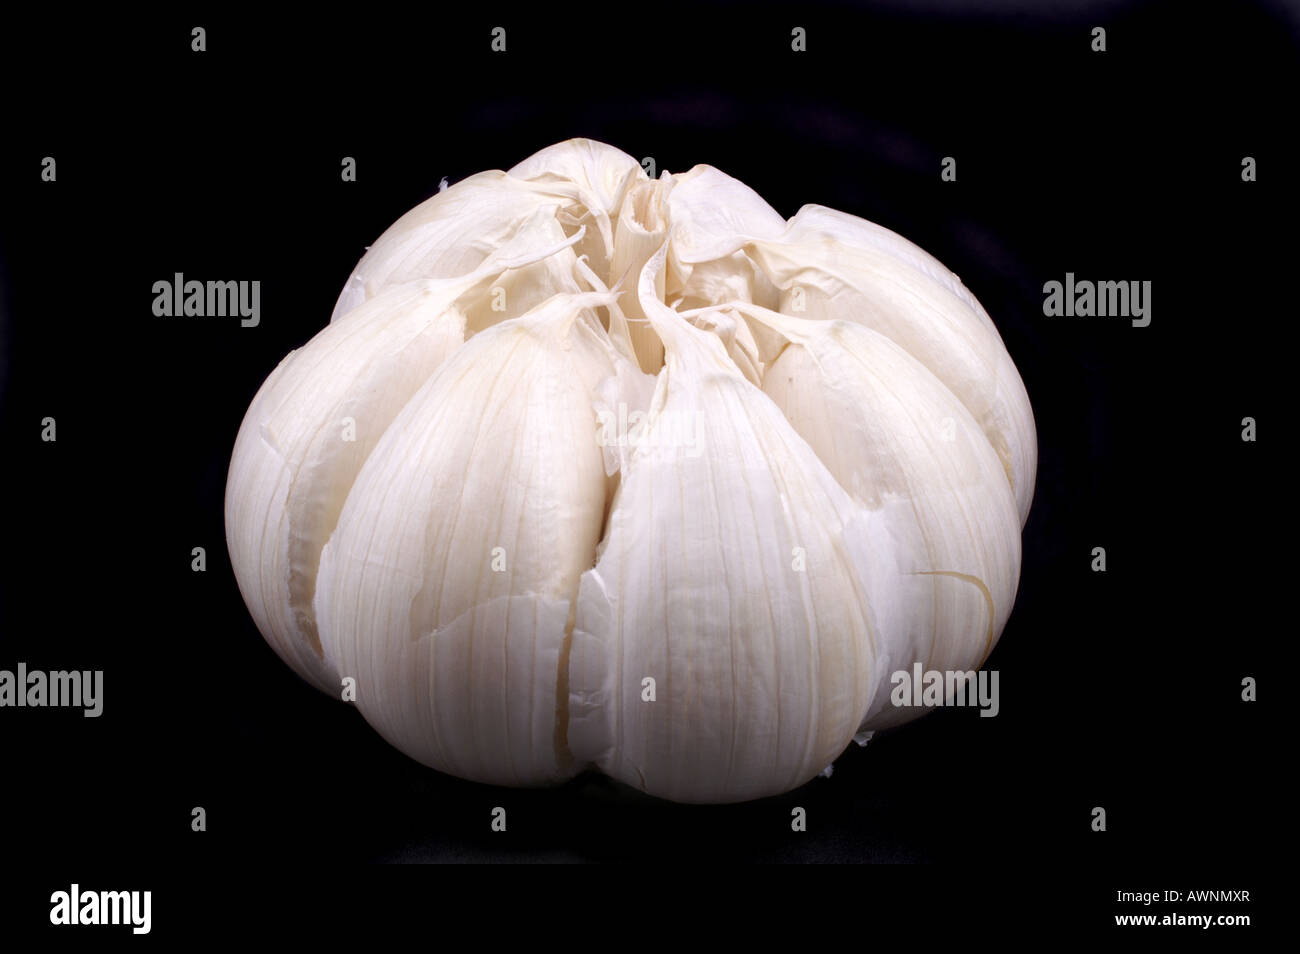 Knoblauch auf schwarzem Hintergrund / Garlic on black background Stock Photo